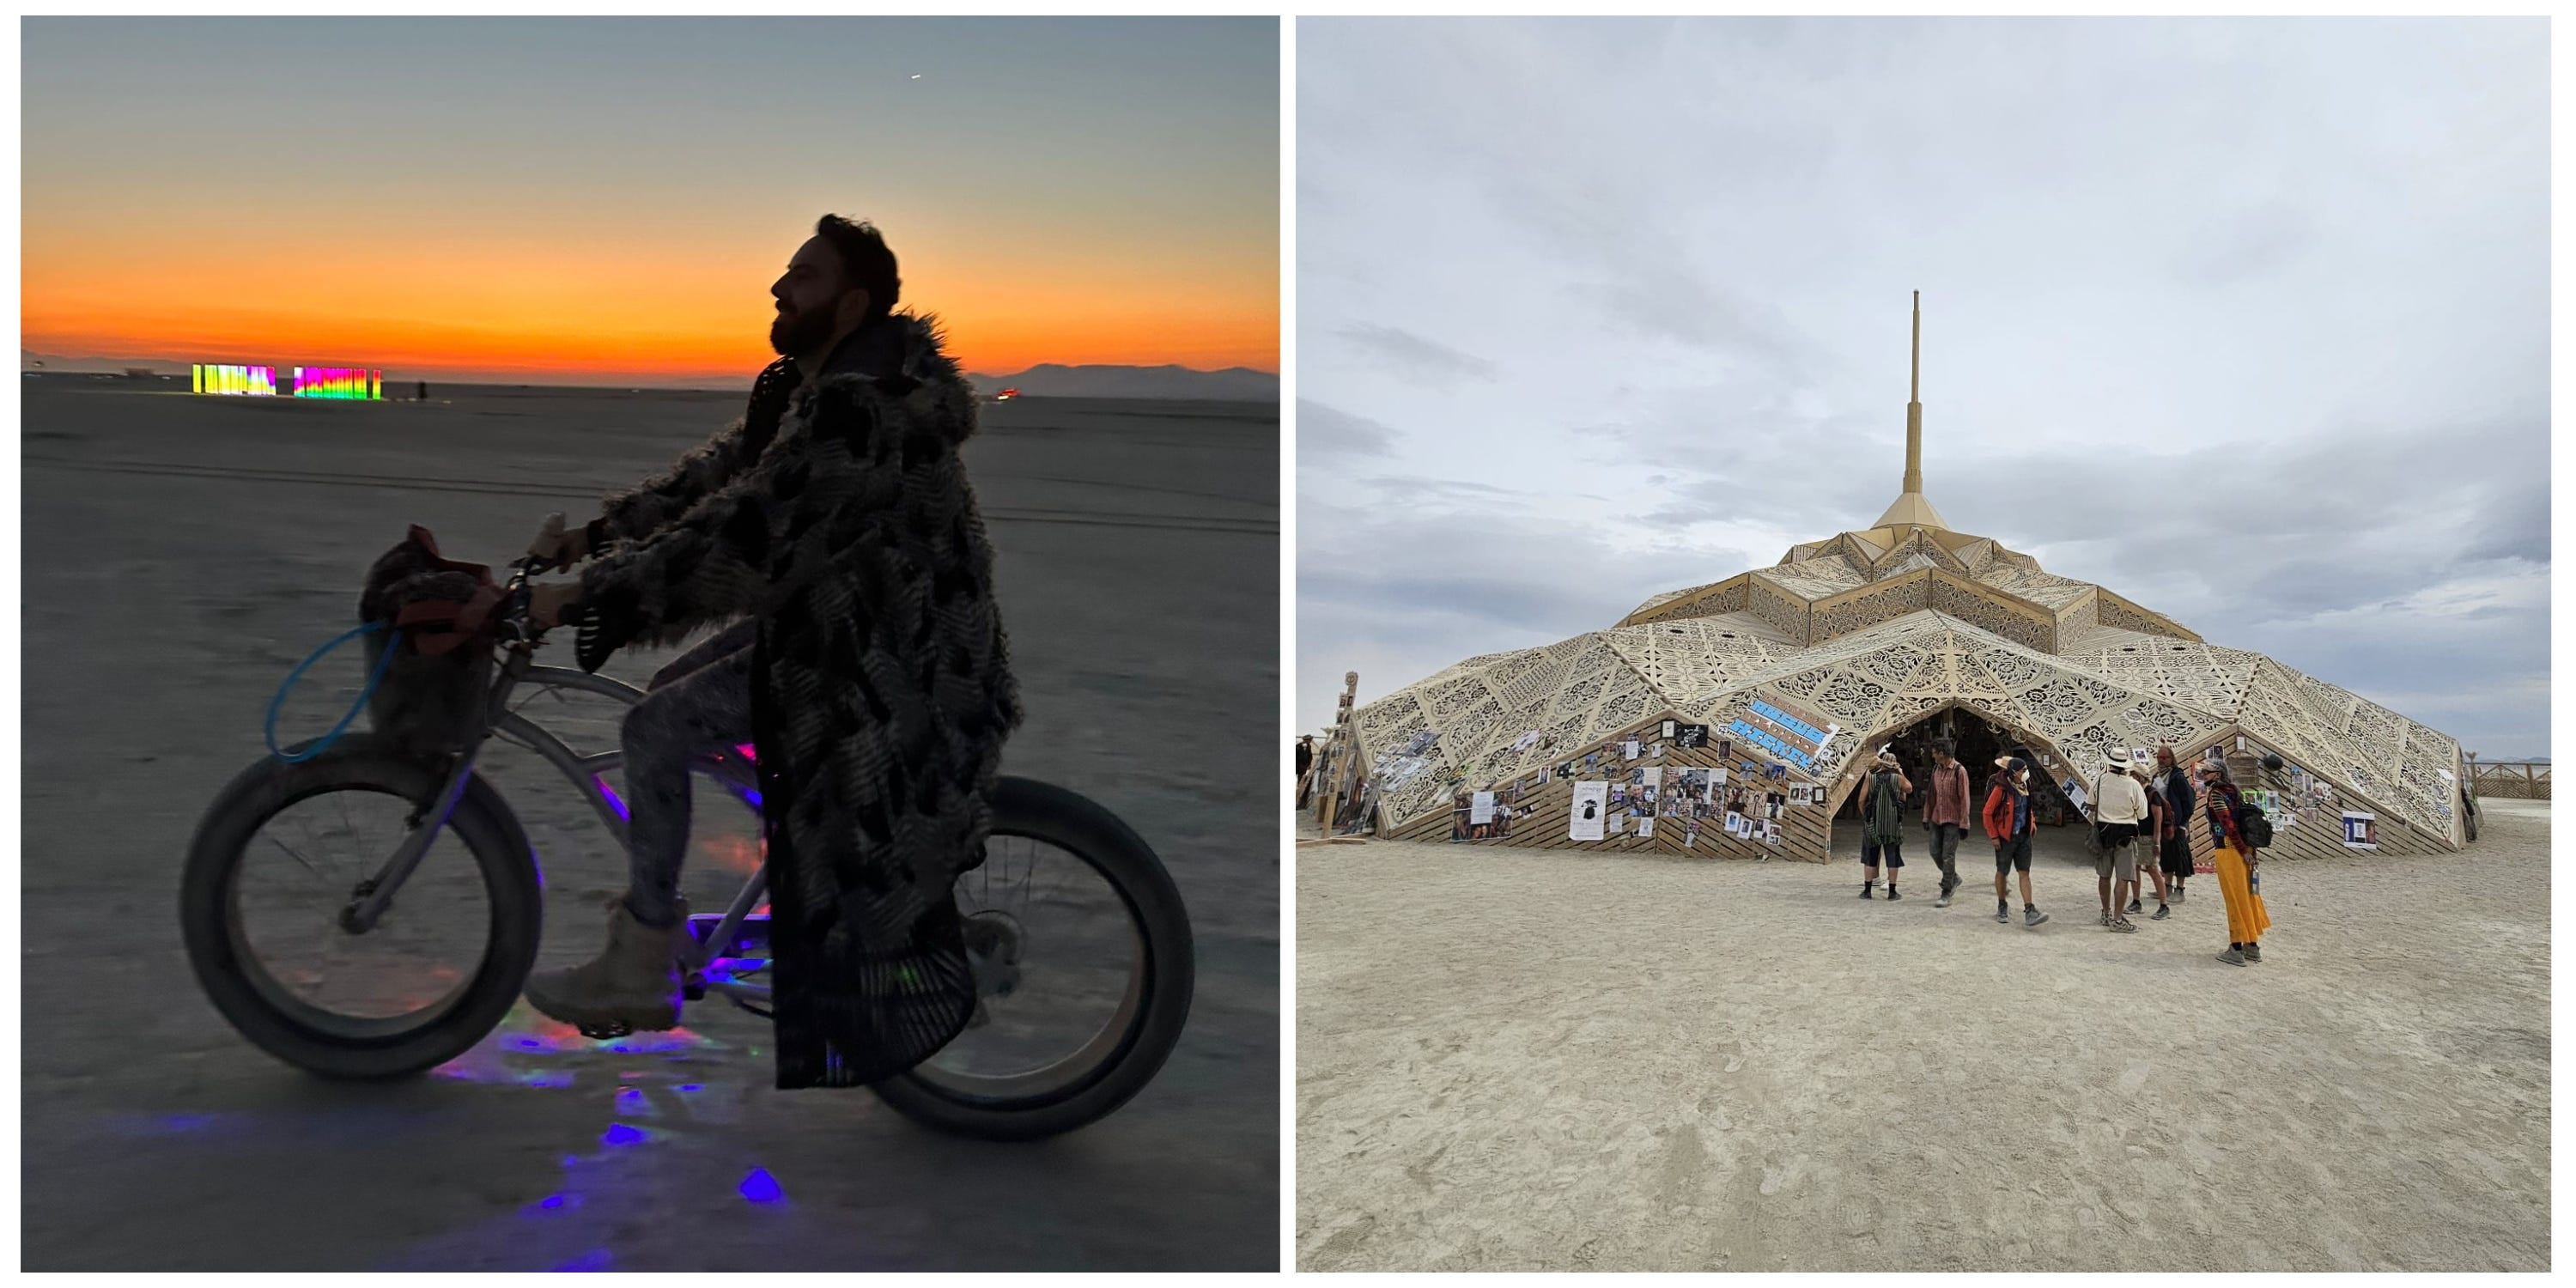 Dan Murray-Serter sagte, er habe nach dem Festival 14 Stunden gebraucht, um von seinem Campingplatz zum Eingangstor des Burning Man zu gelangen.